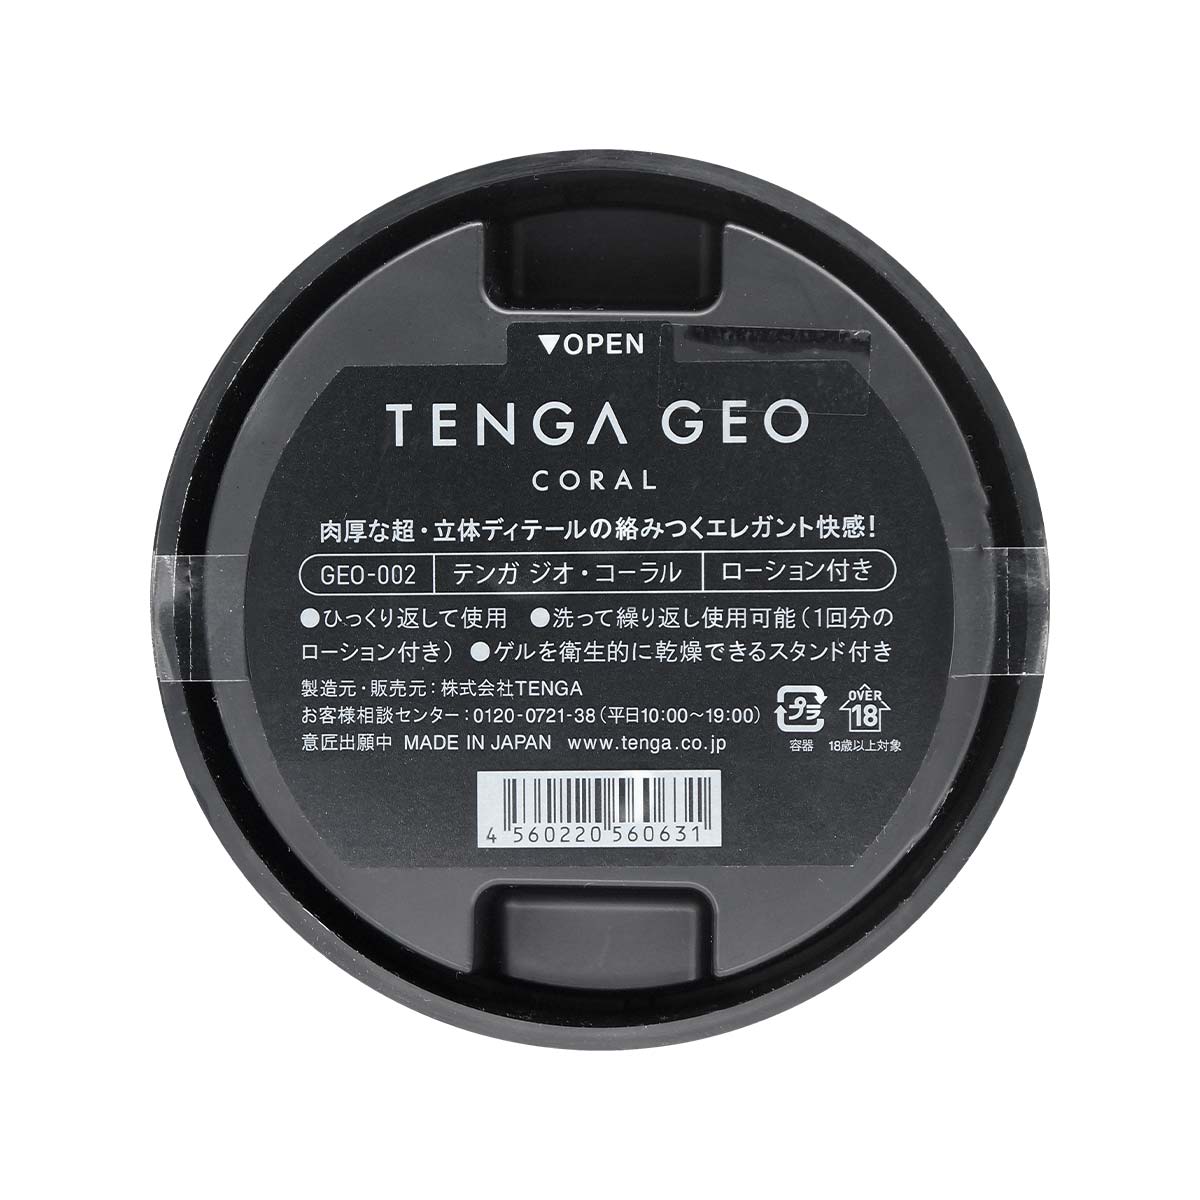 TENGA GEO 珊瑚球 飛機杯-p_3